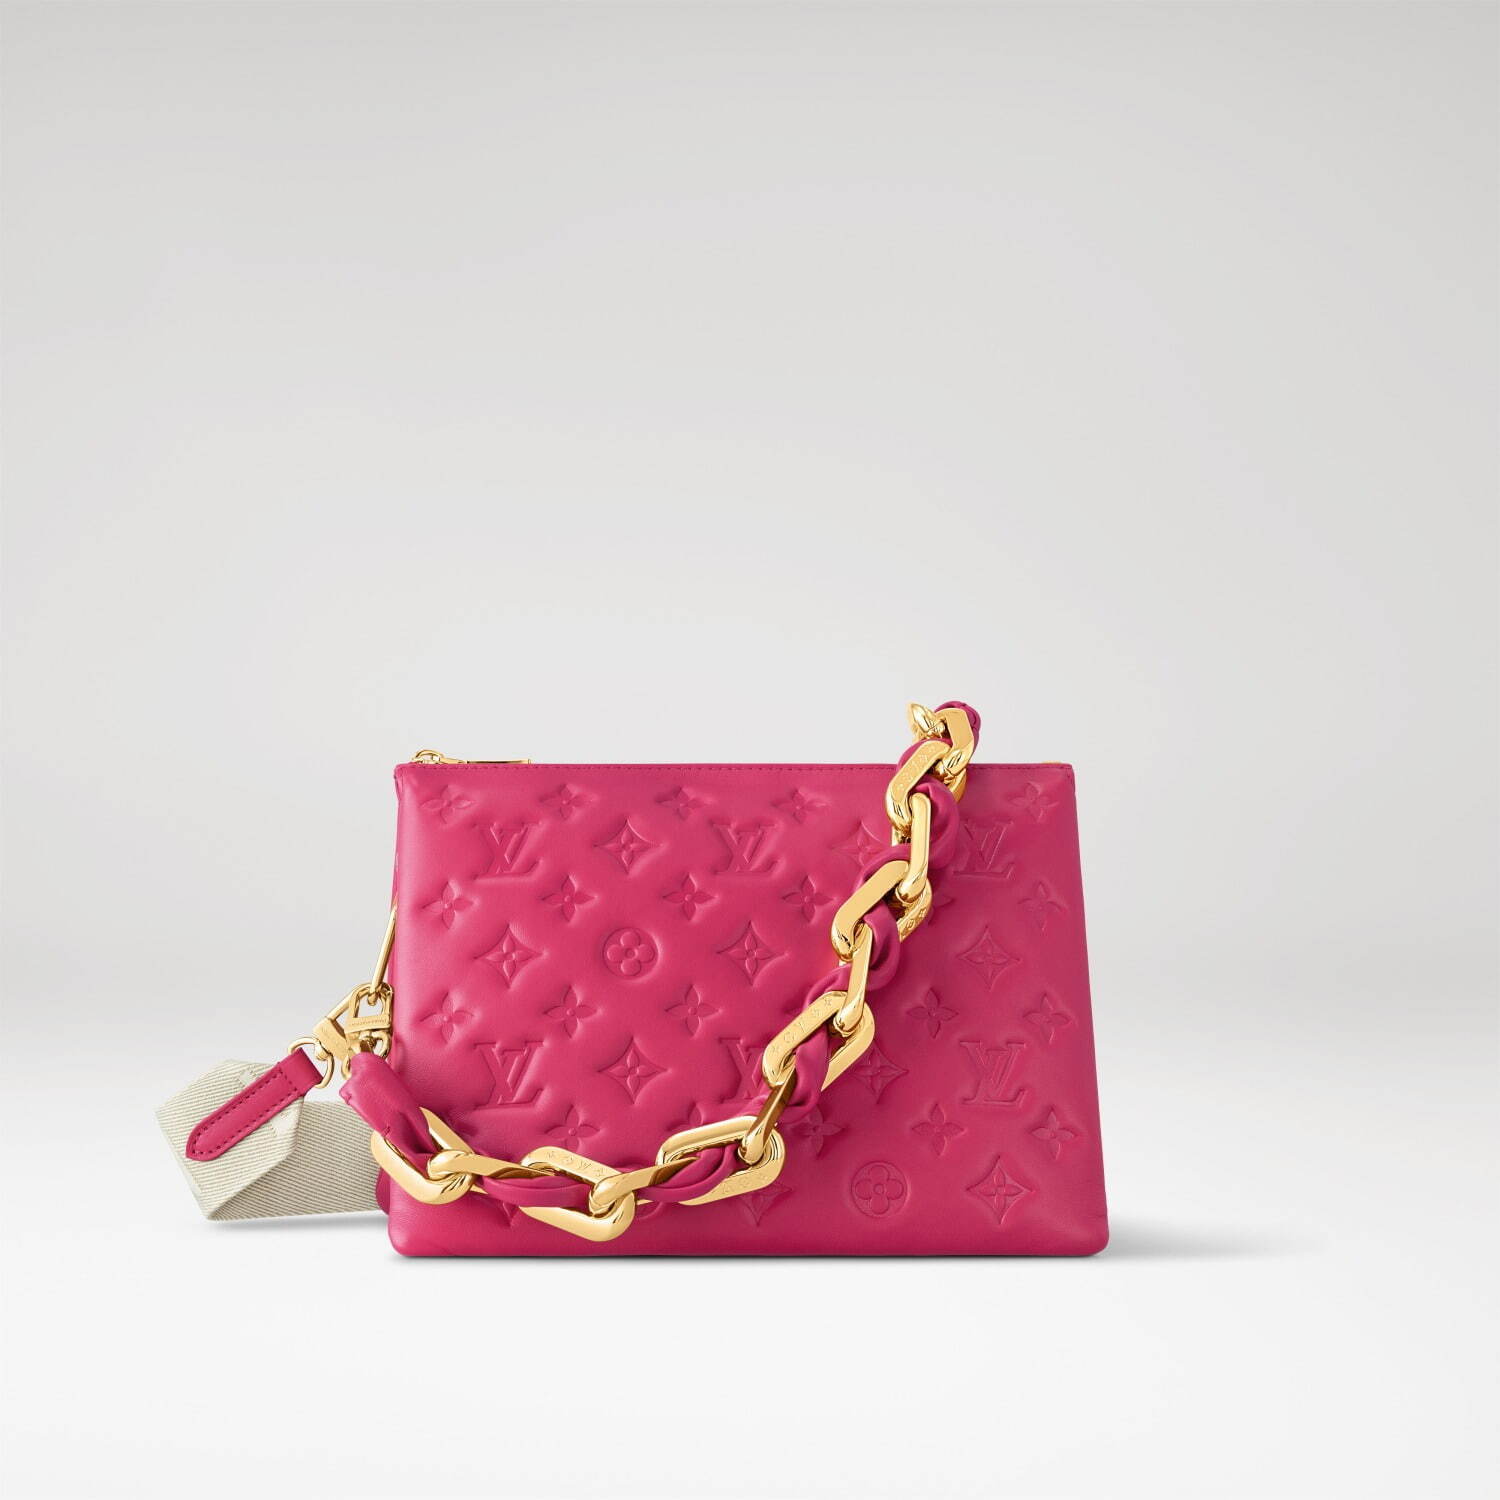 ルイ・ヴィトン“クッション着想”バッグ「クッサン」新色、鮮やかピンク